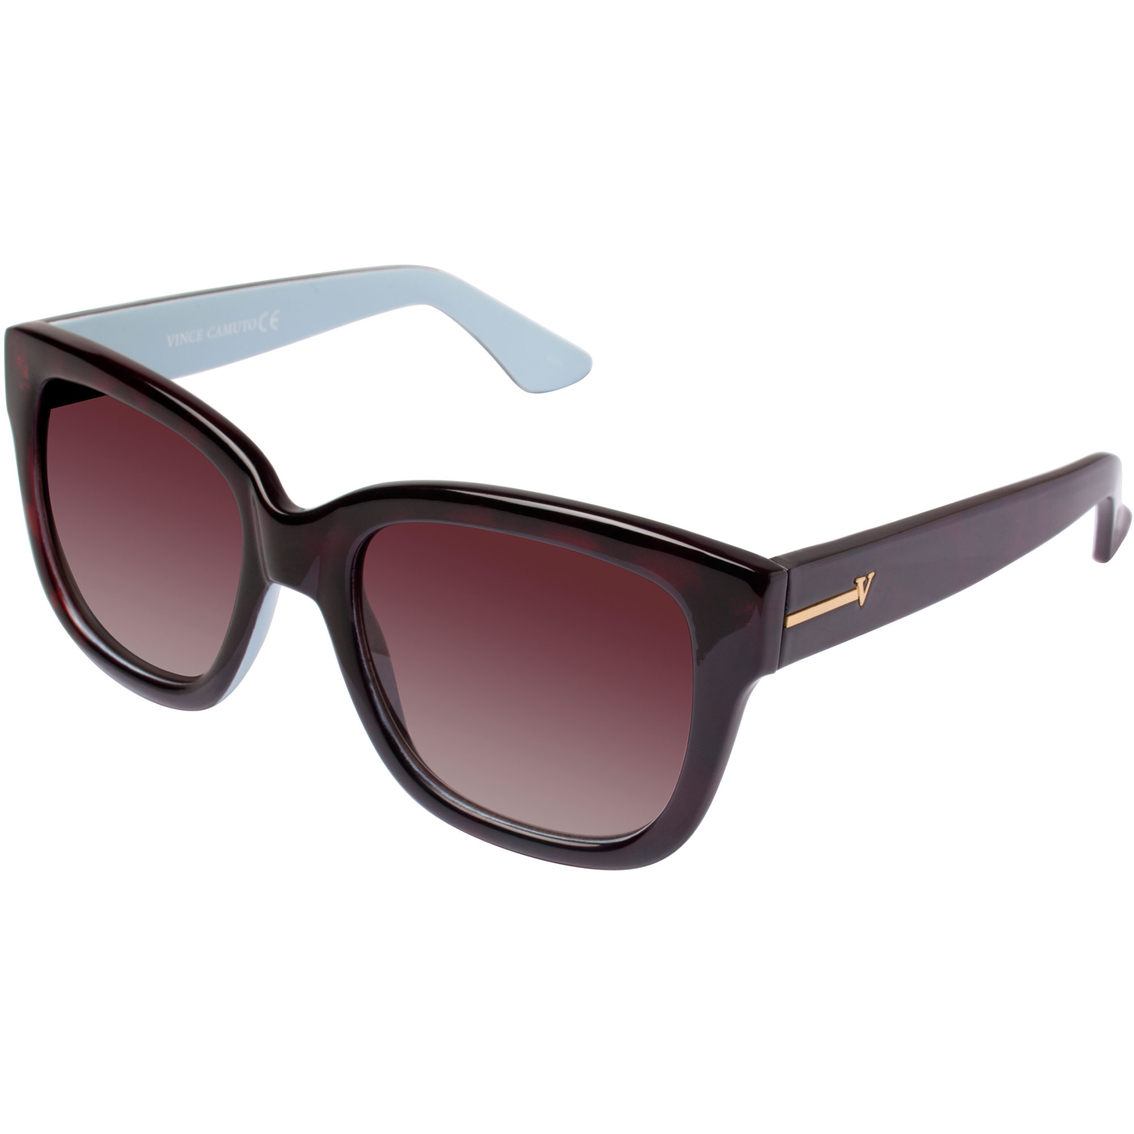 Vince Camuto Two Tone Plastic Retro Glam Sunglasses | Women's ...